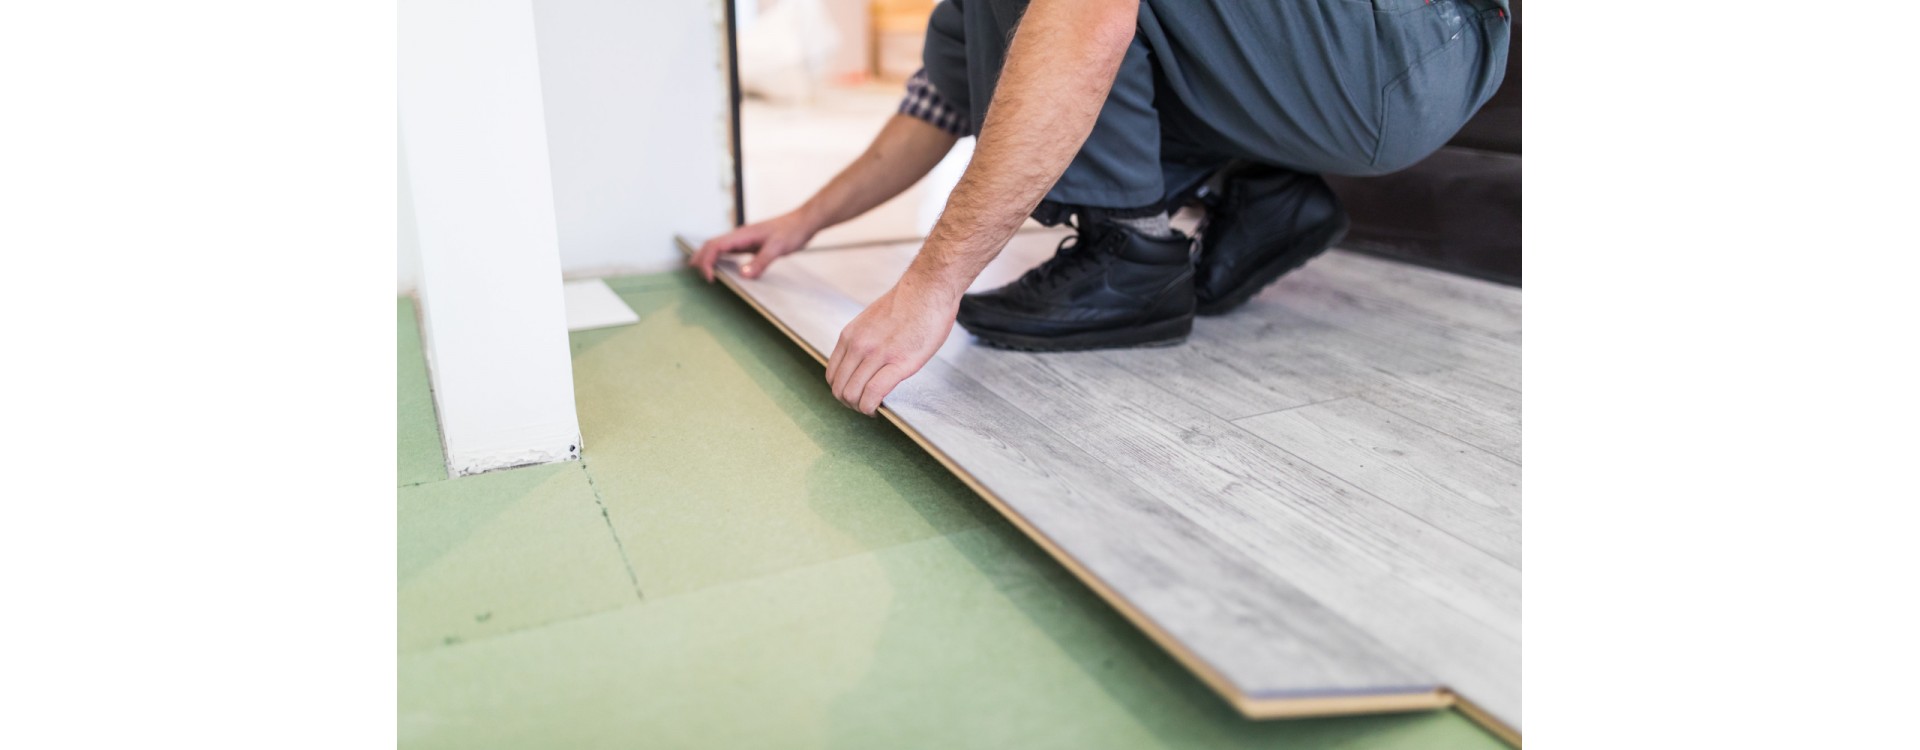 Kiedy najlepiej zamontować panele podłogowe?